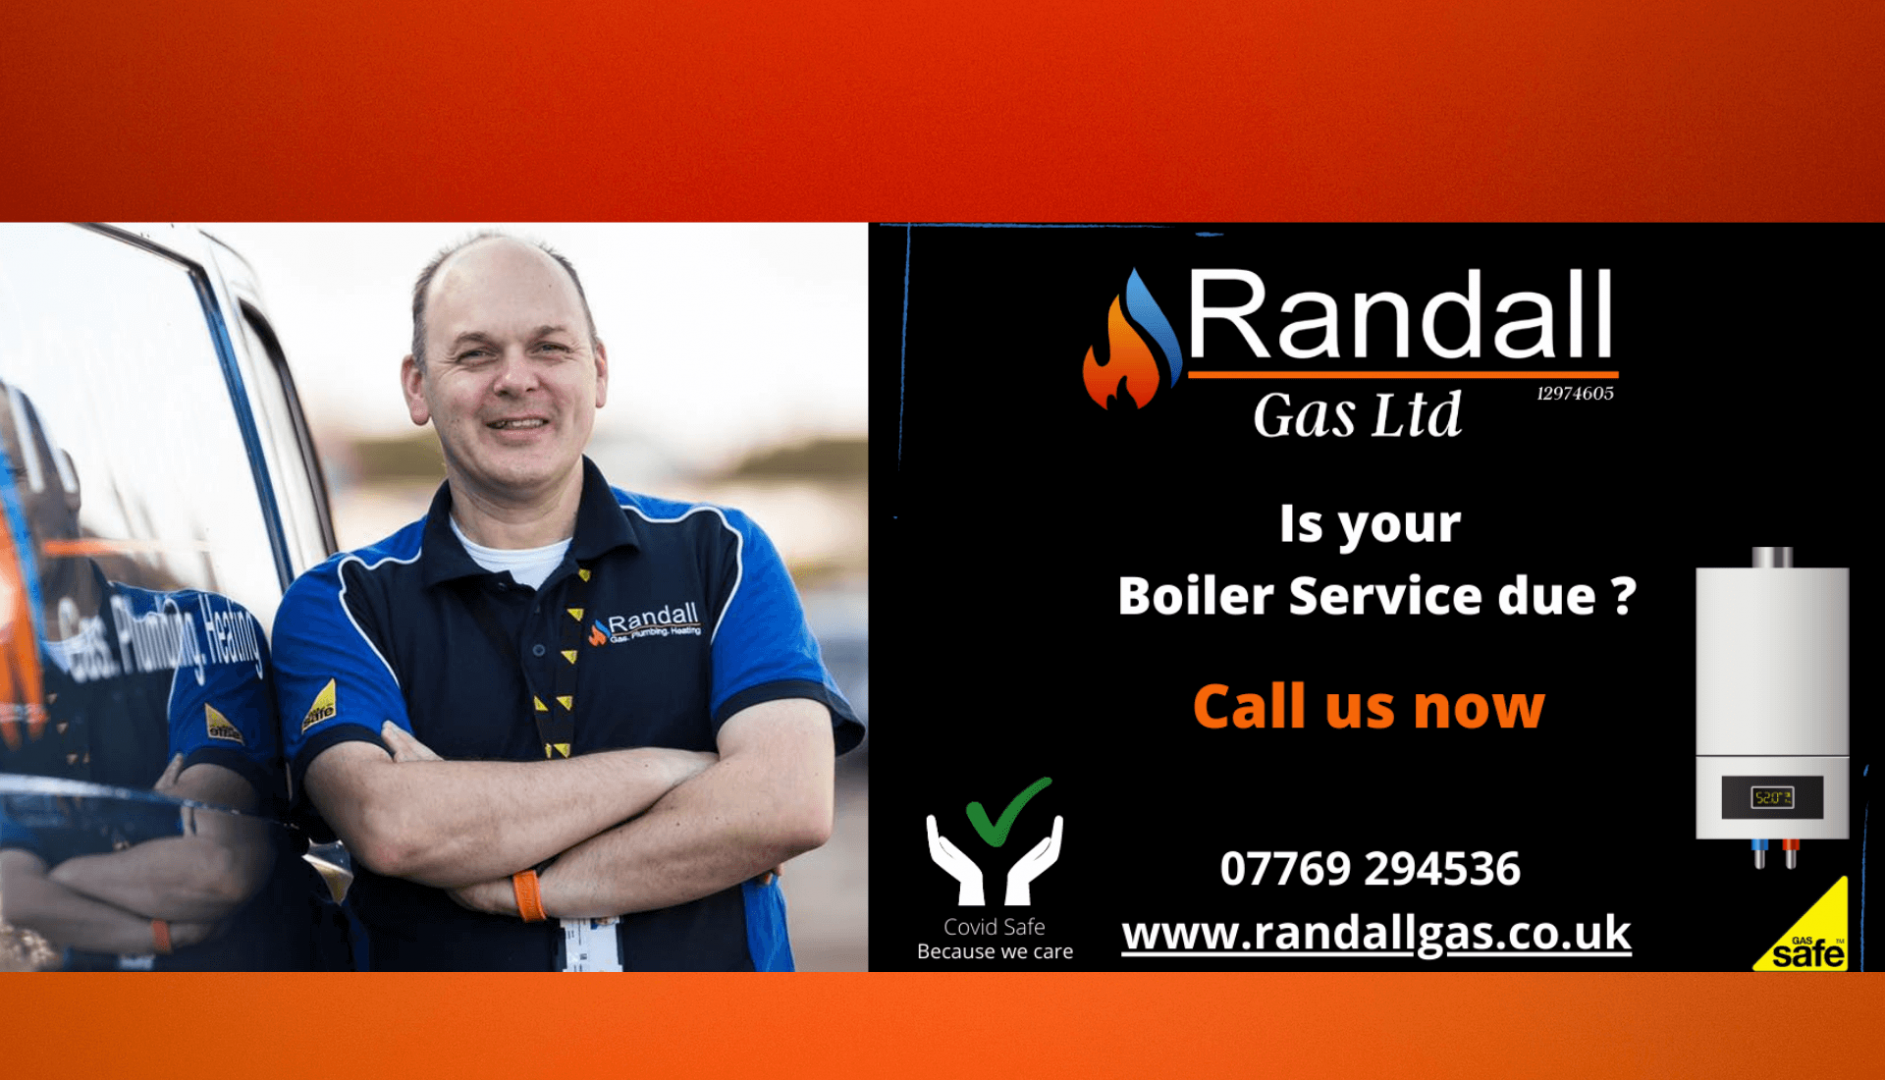 Randall Gas Ltd in Gloucester